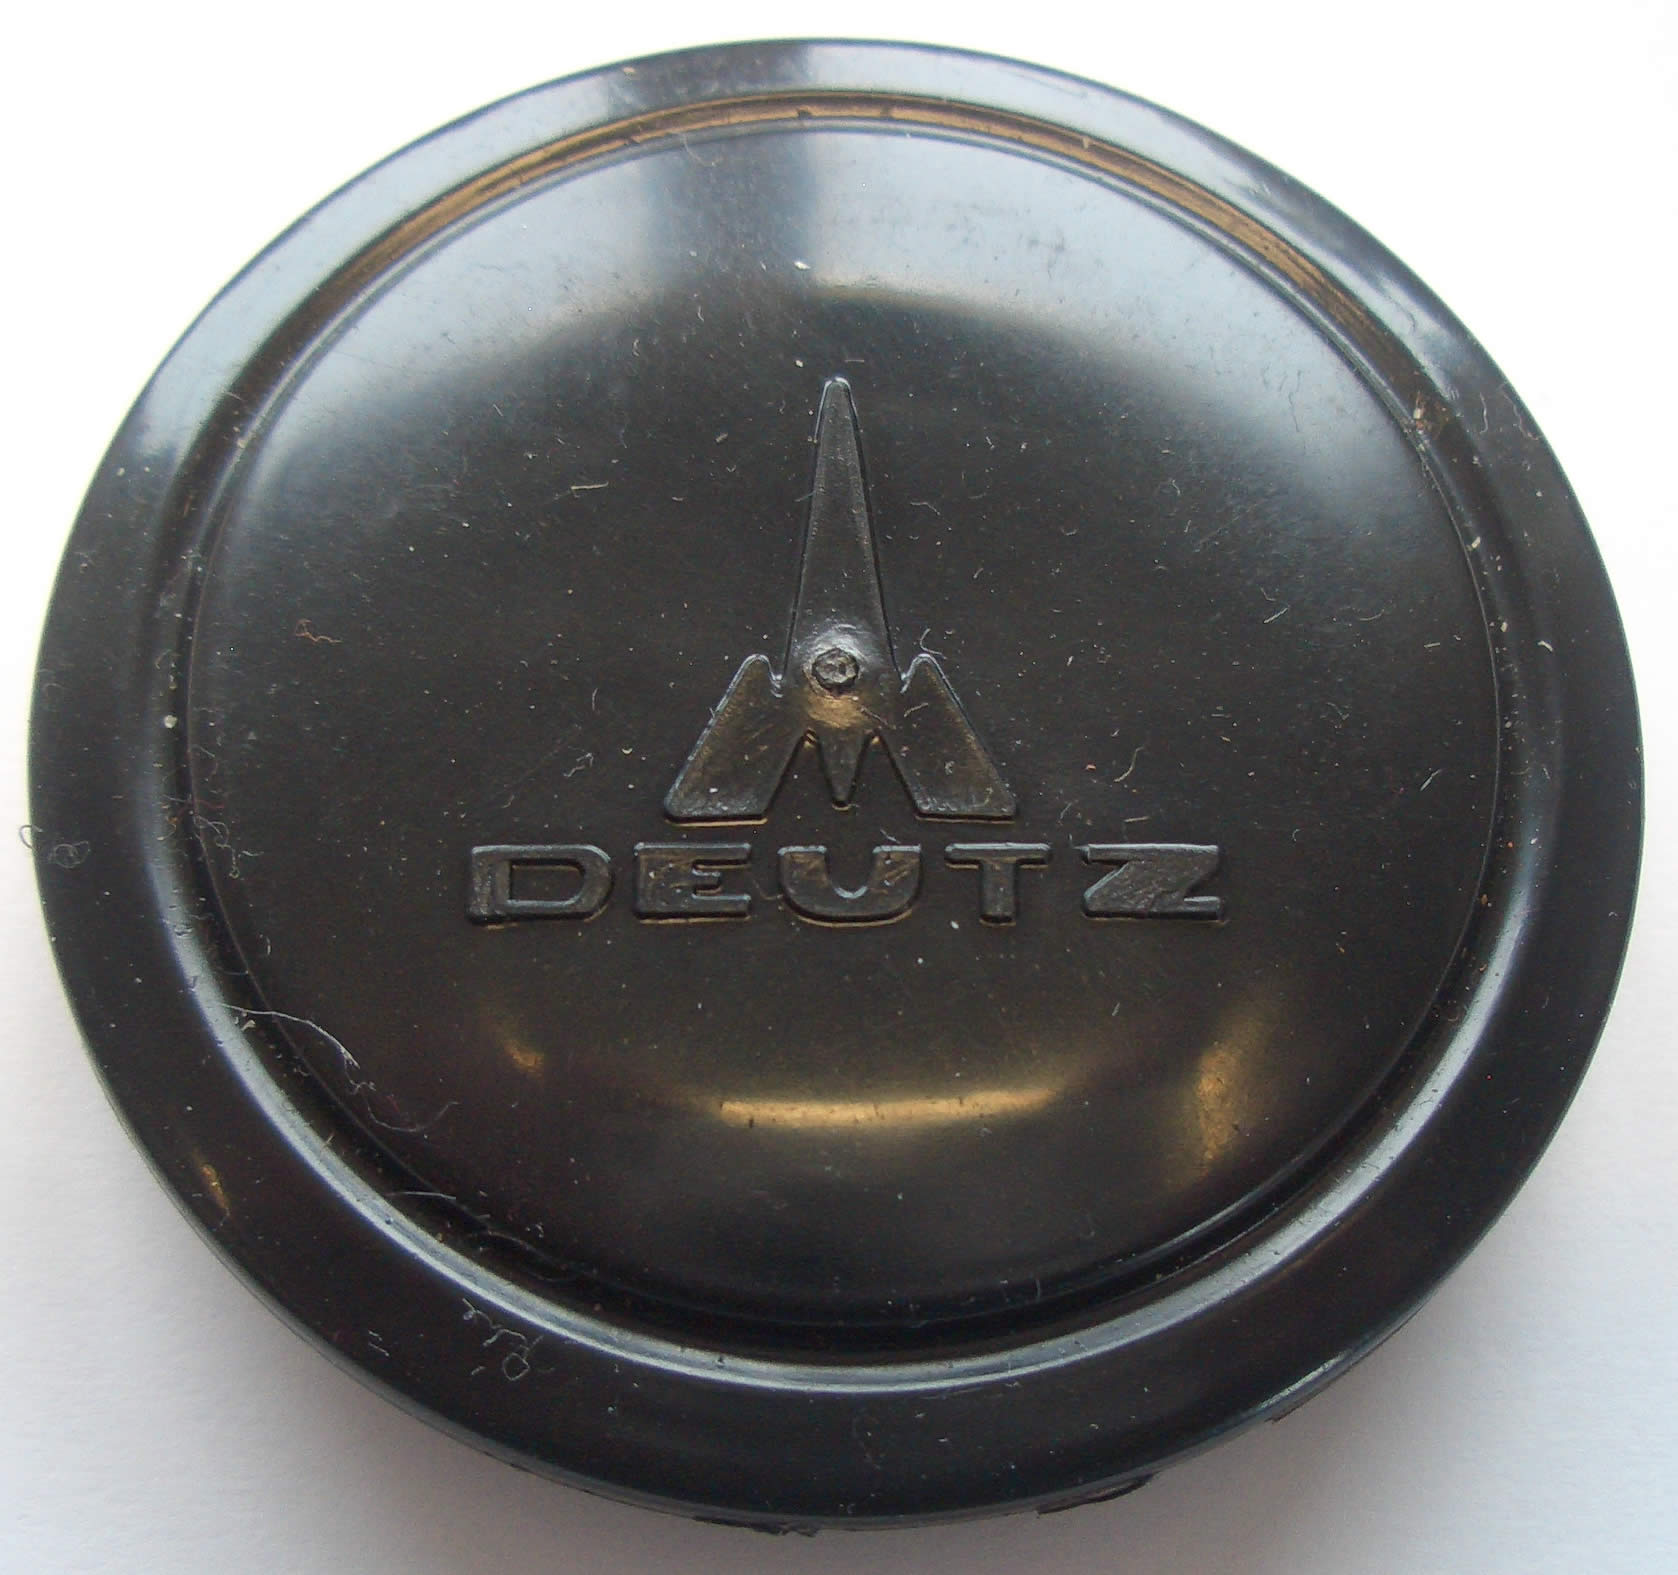 Oldtimer Jehle - Abdeckkappe mit Deutz Emblem Ø 50 mm für Lenkrad